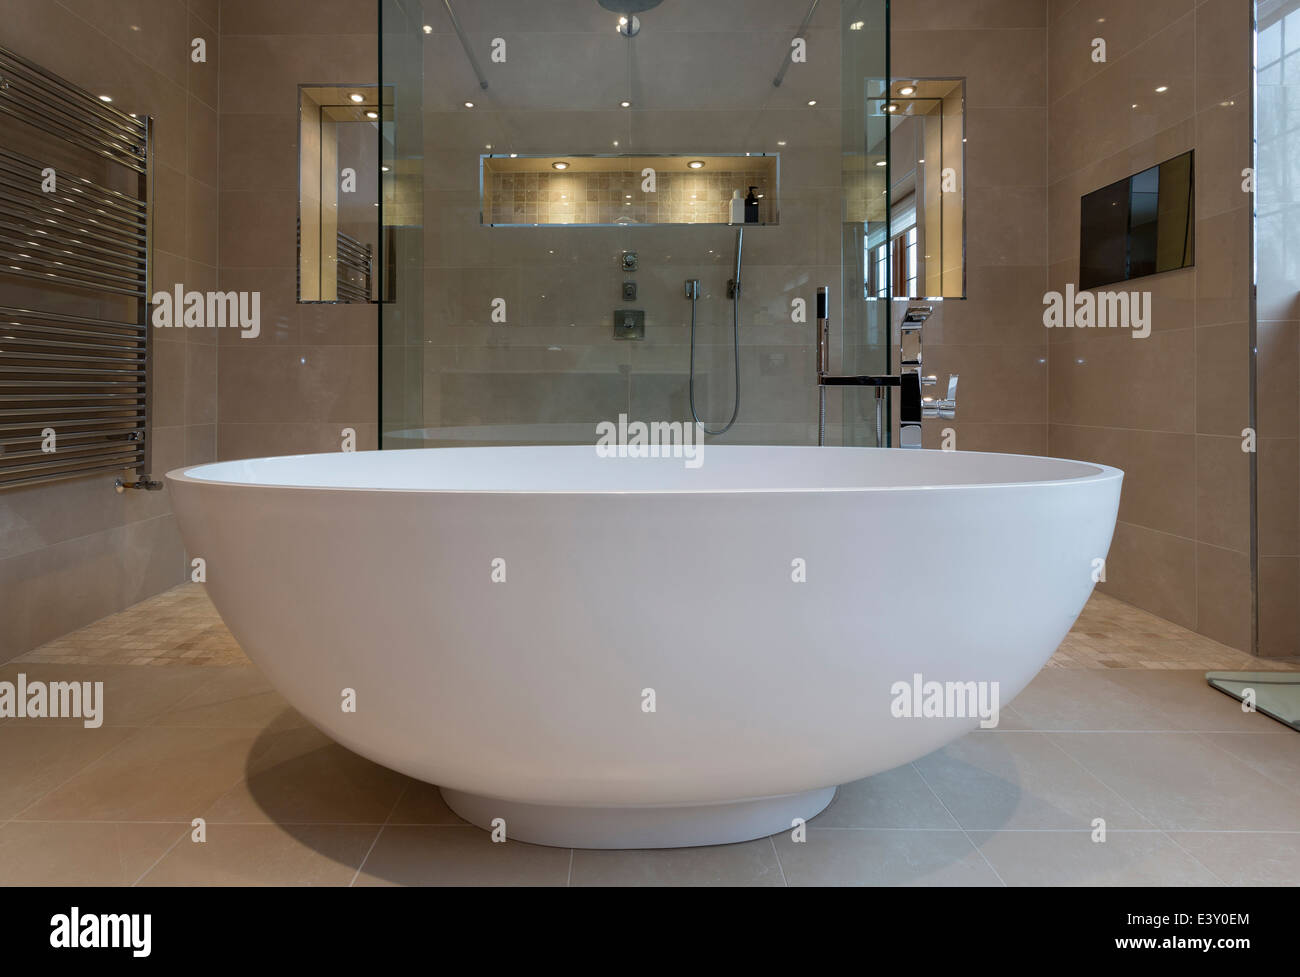 Baignoire et douche dans la salle de bains moderne Banque D'Images